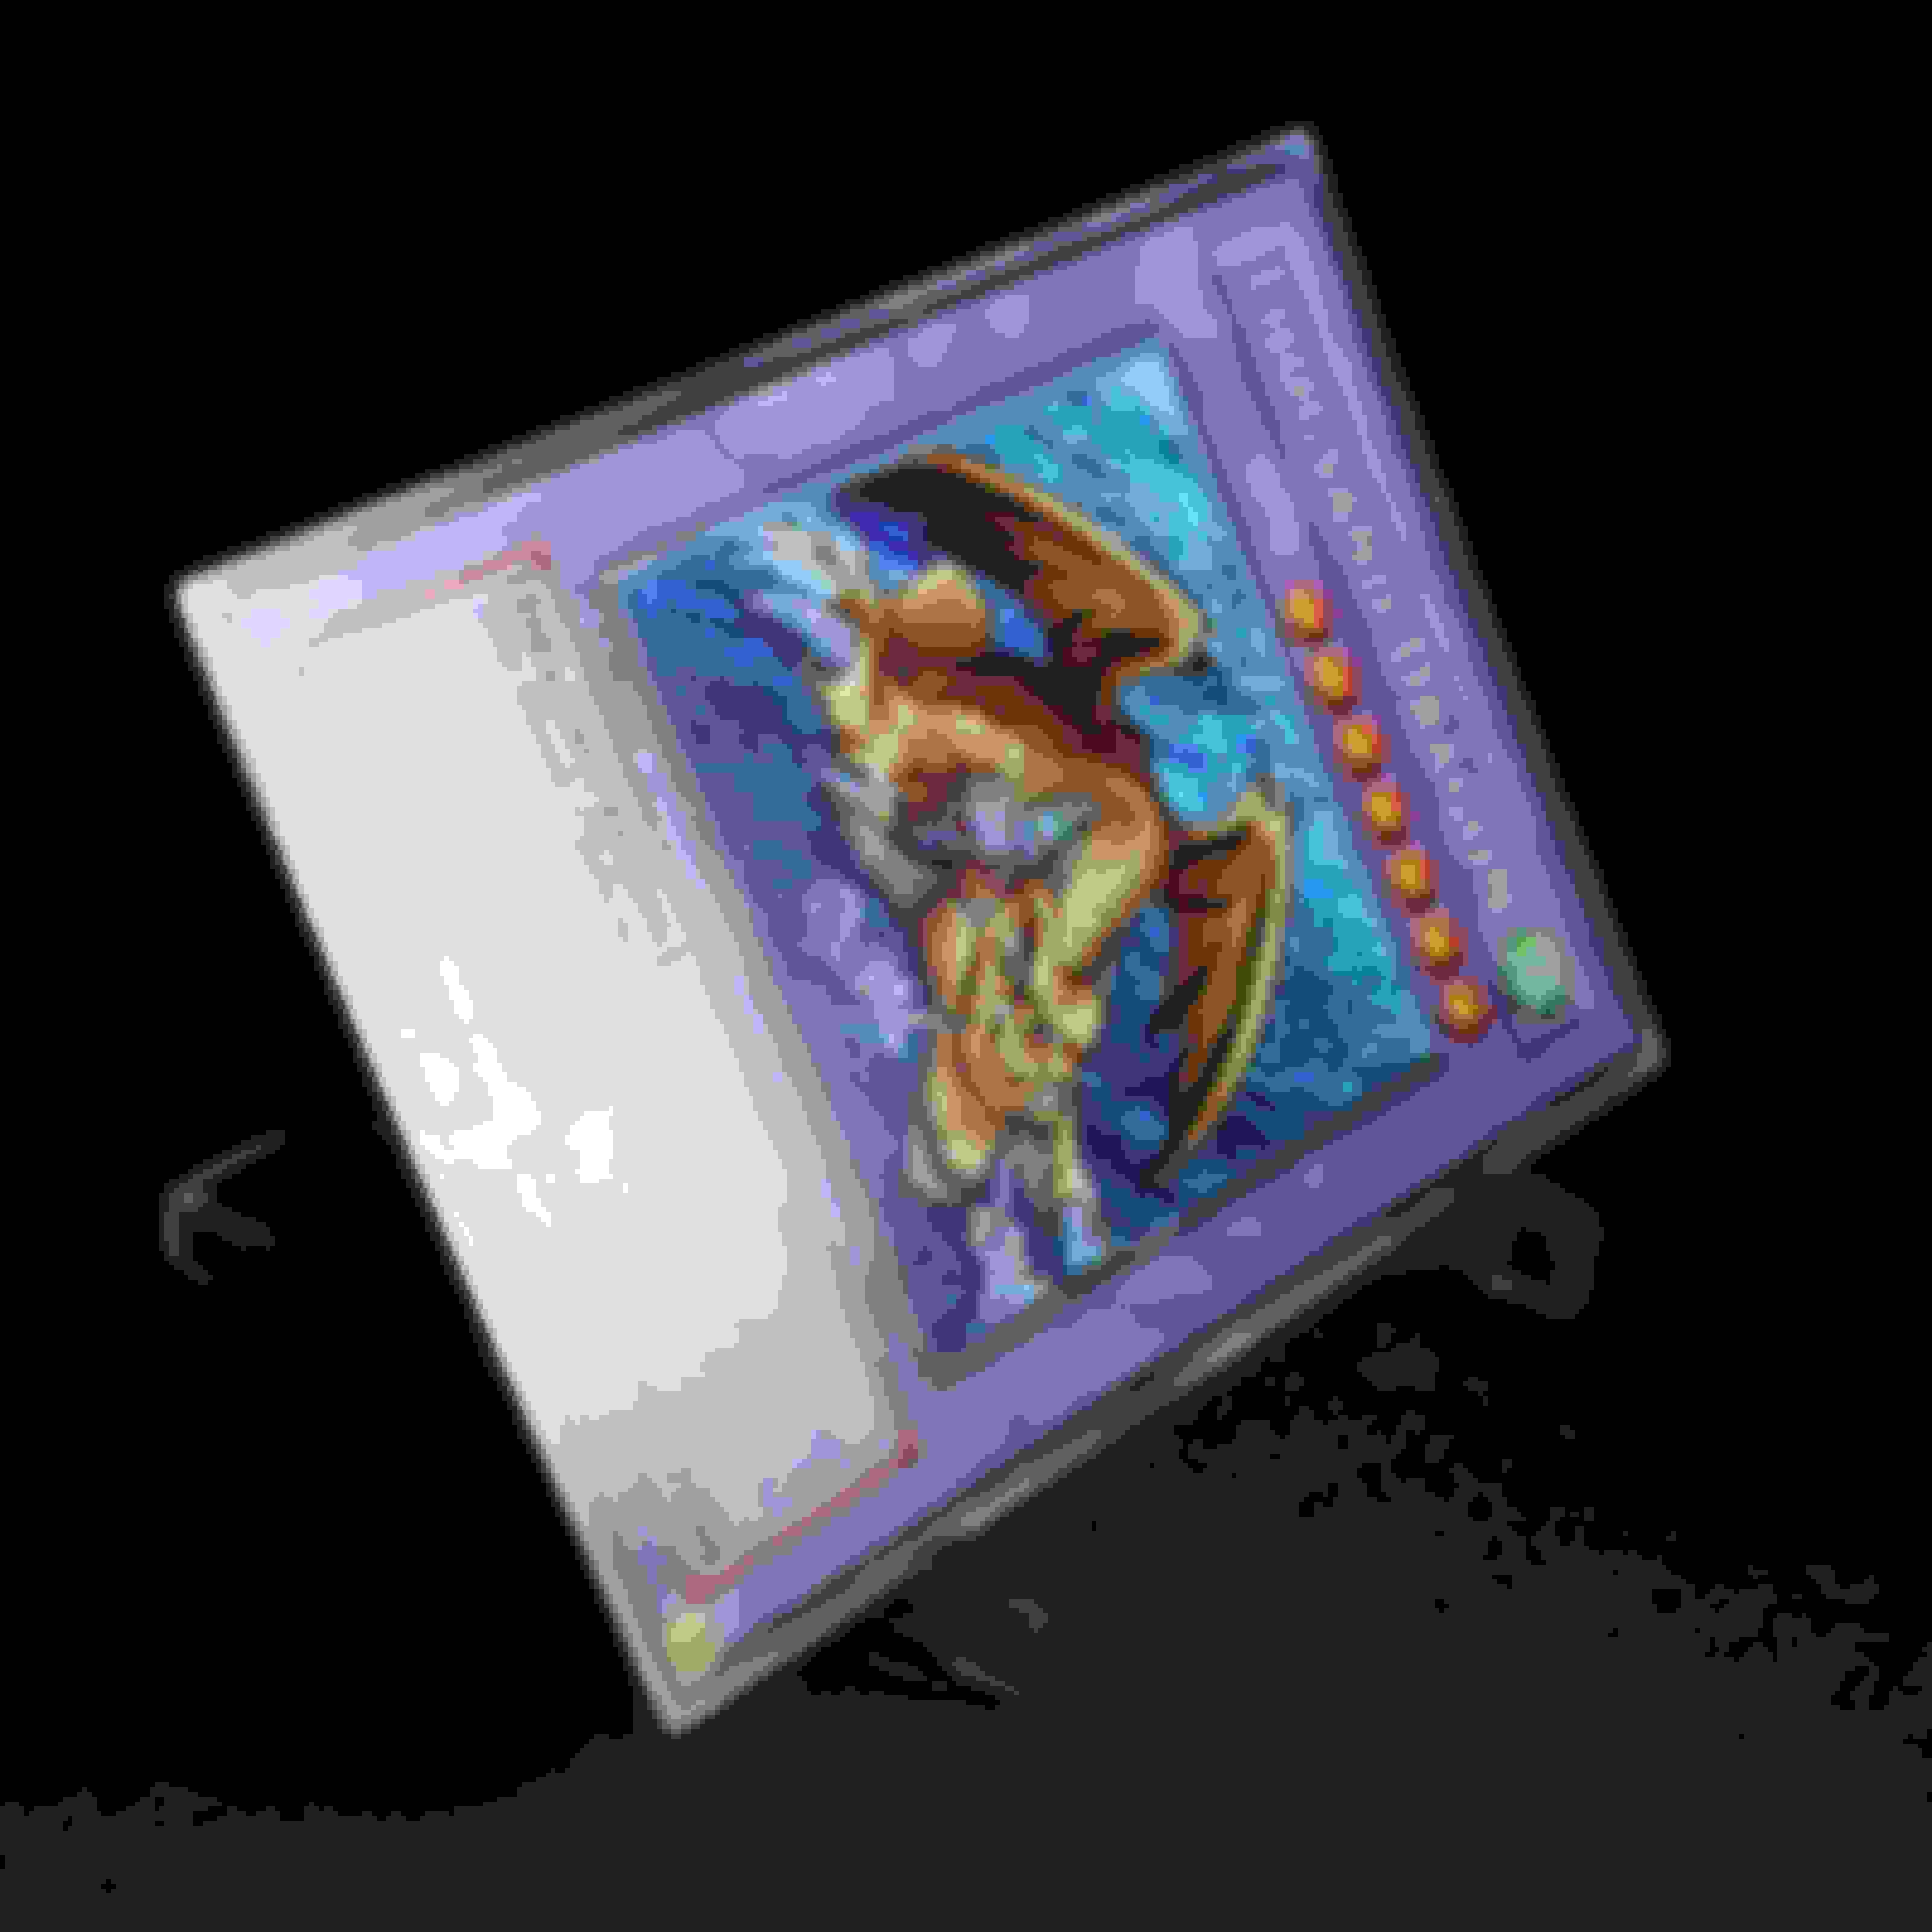 超希少 絶版 遊戯王 旧アジア版 1st サウンドドラゴン/千年竜シークレット